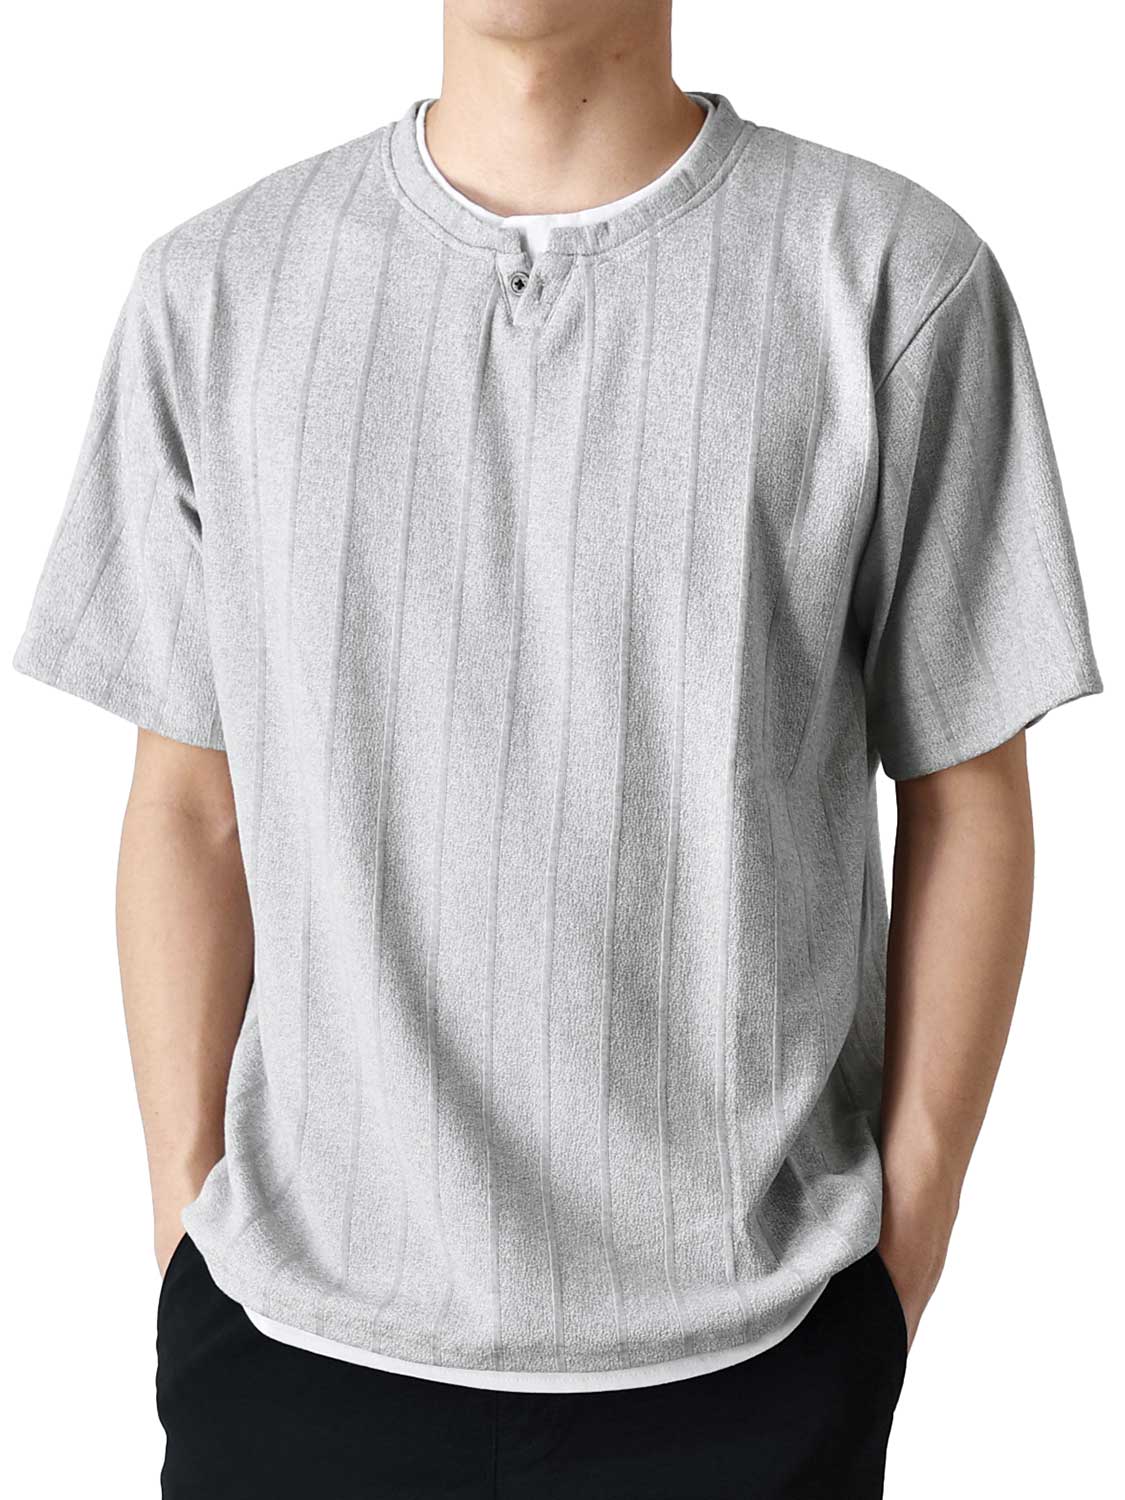 Tシャツ メンズ 長袖 カットソー 重ね着風 ストレッチ 送料無料 通販Y